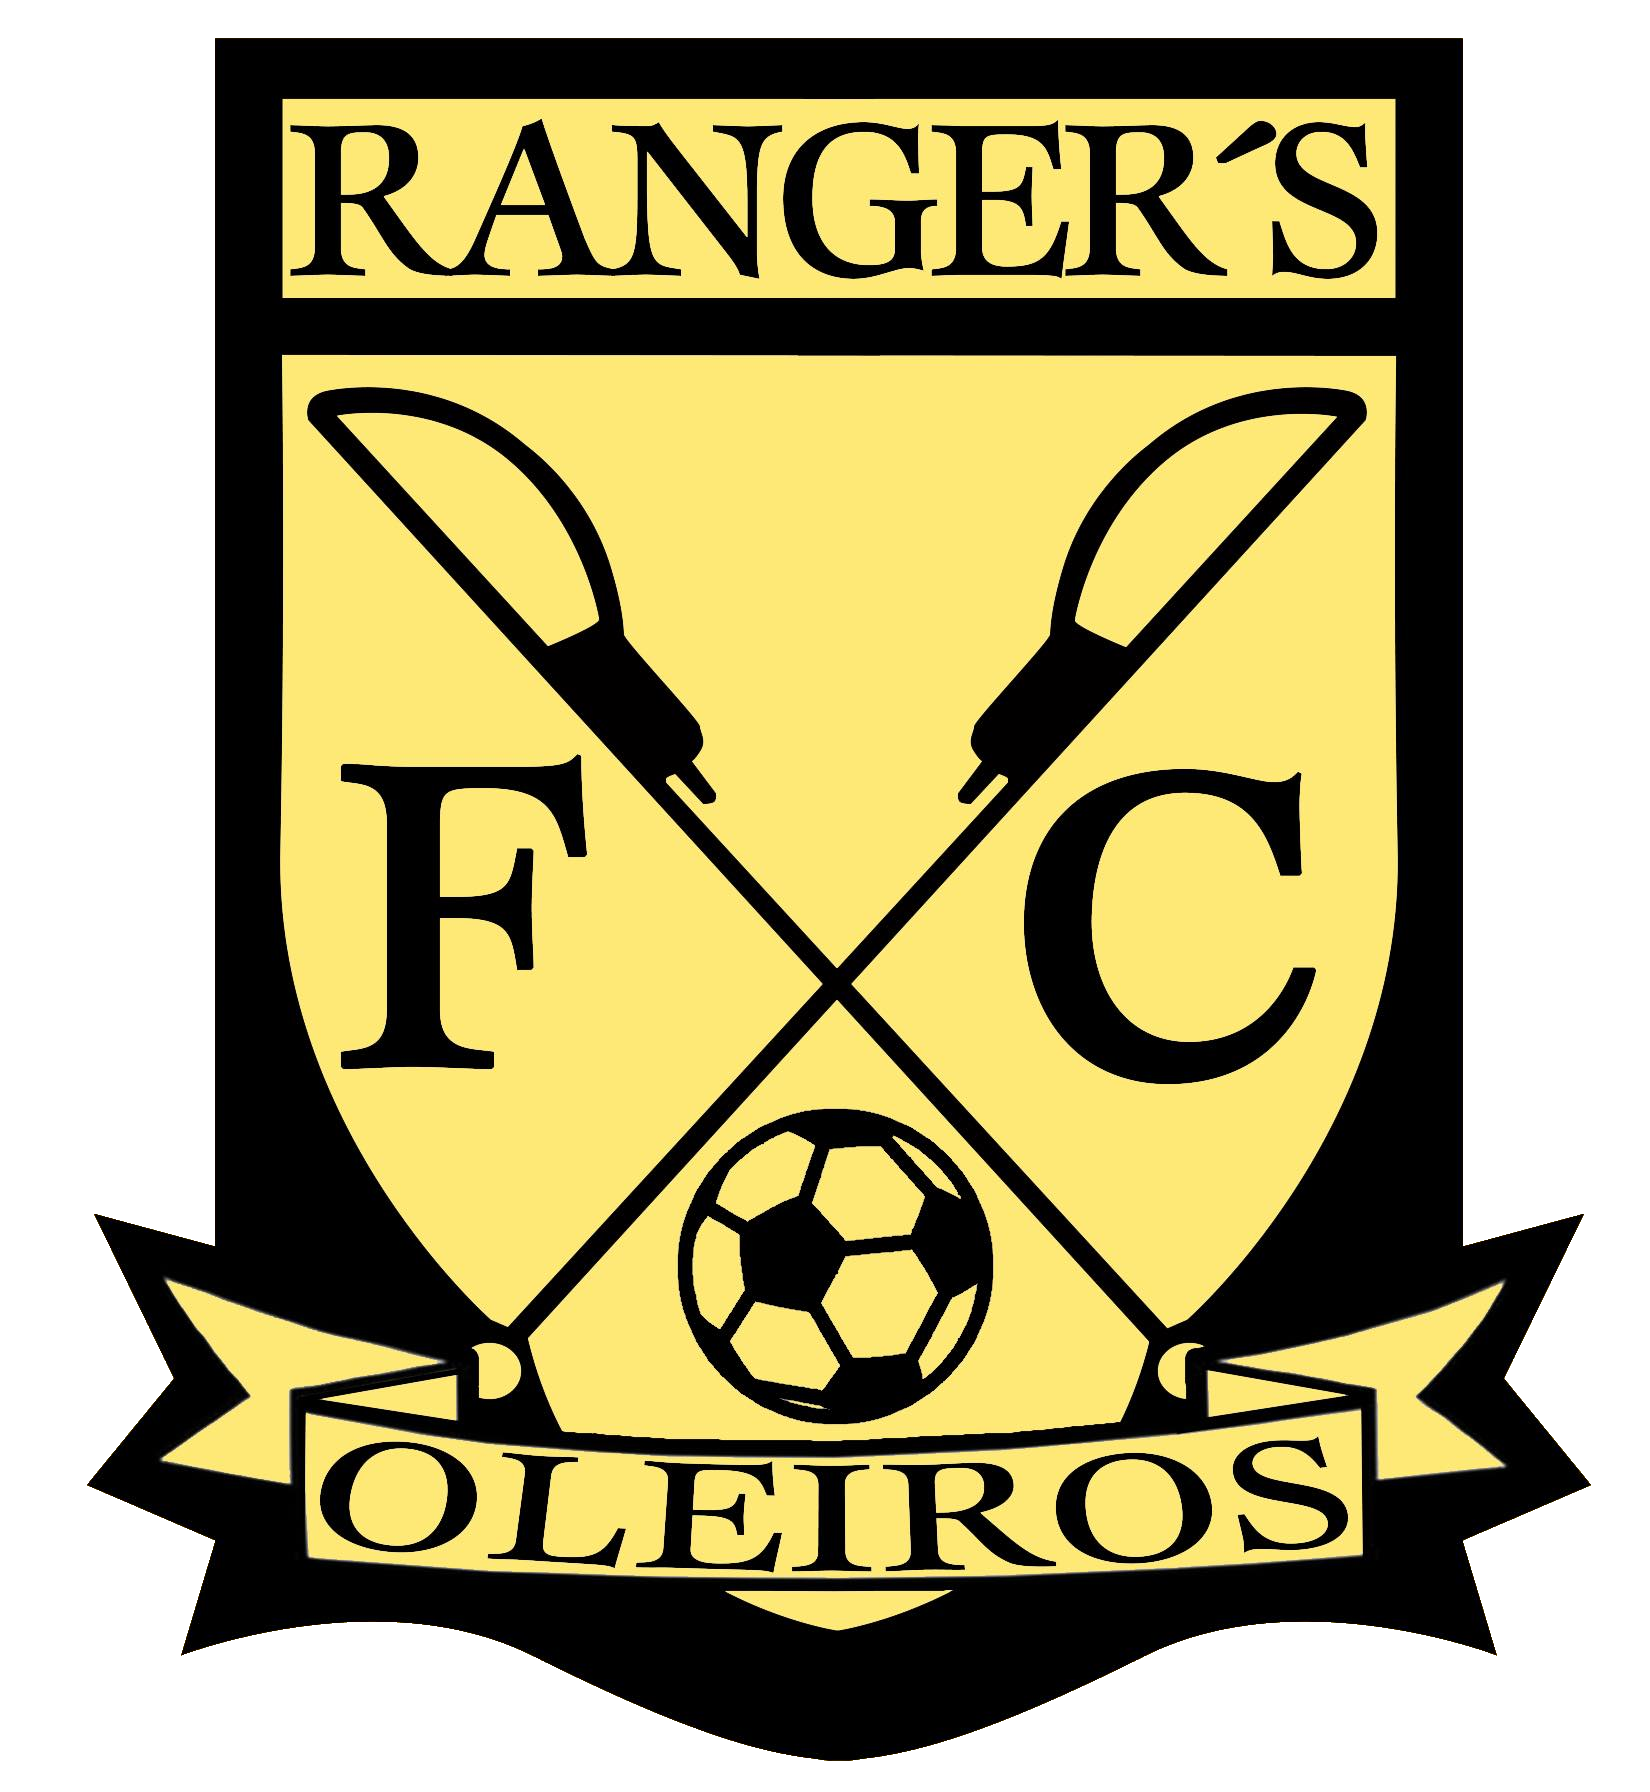 Ranger's Oleiros FC